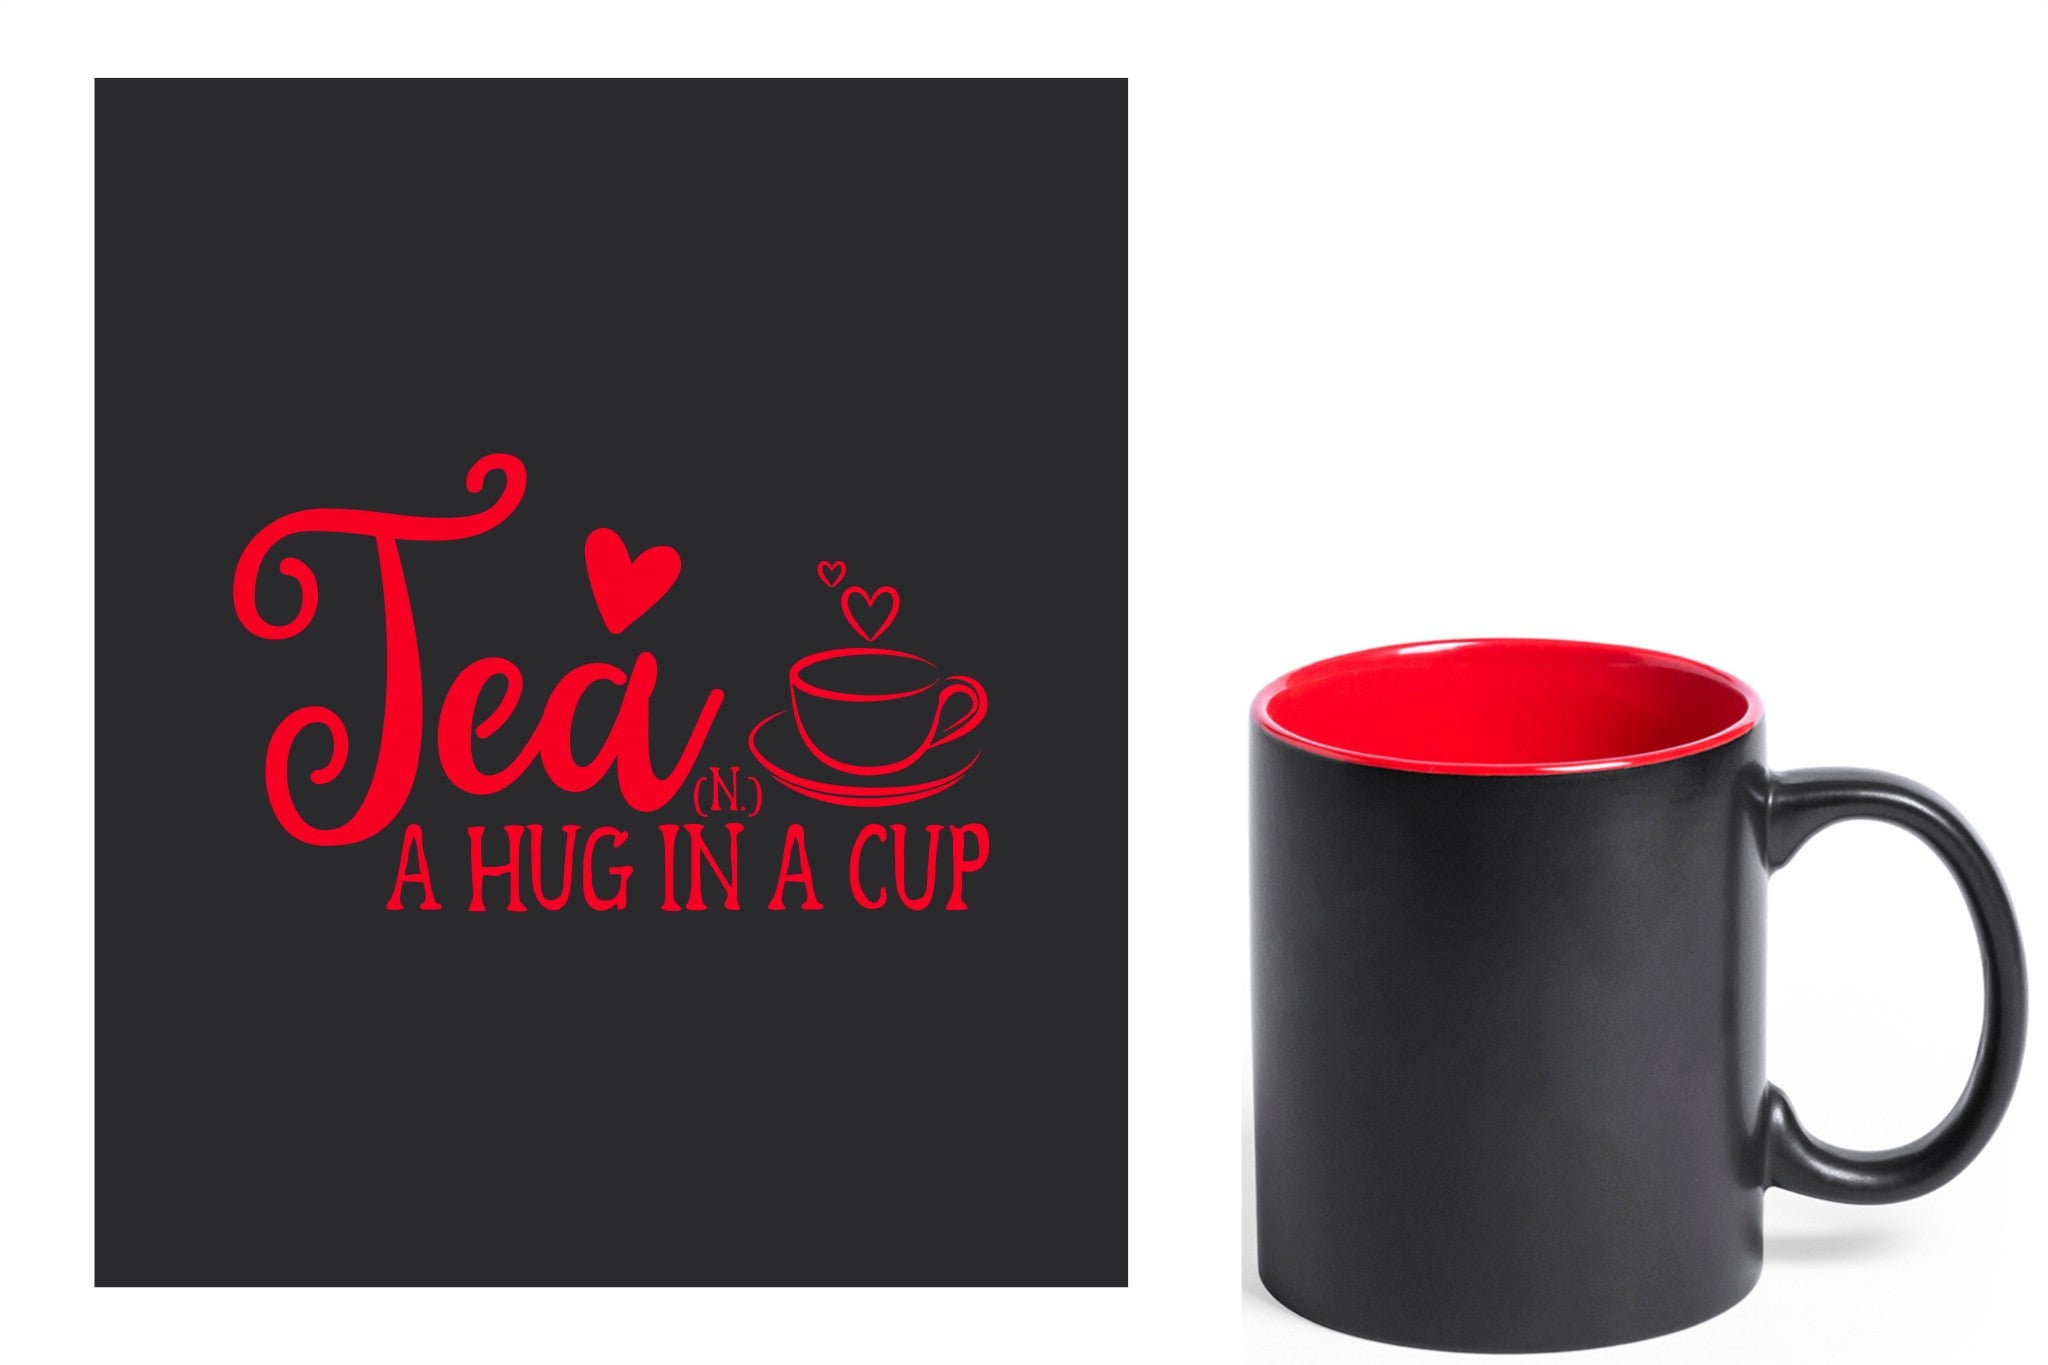 zwarte keramische mok met rode gravure  'Tea and a hug in a cup'.